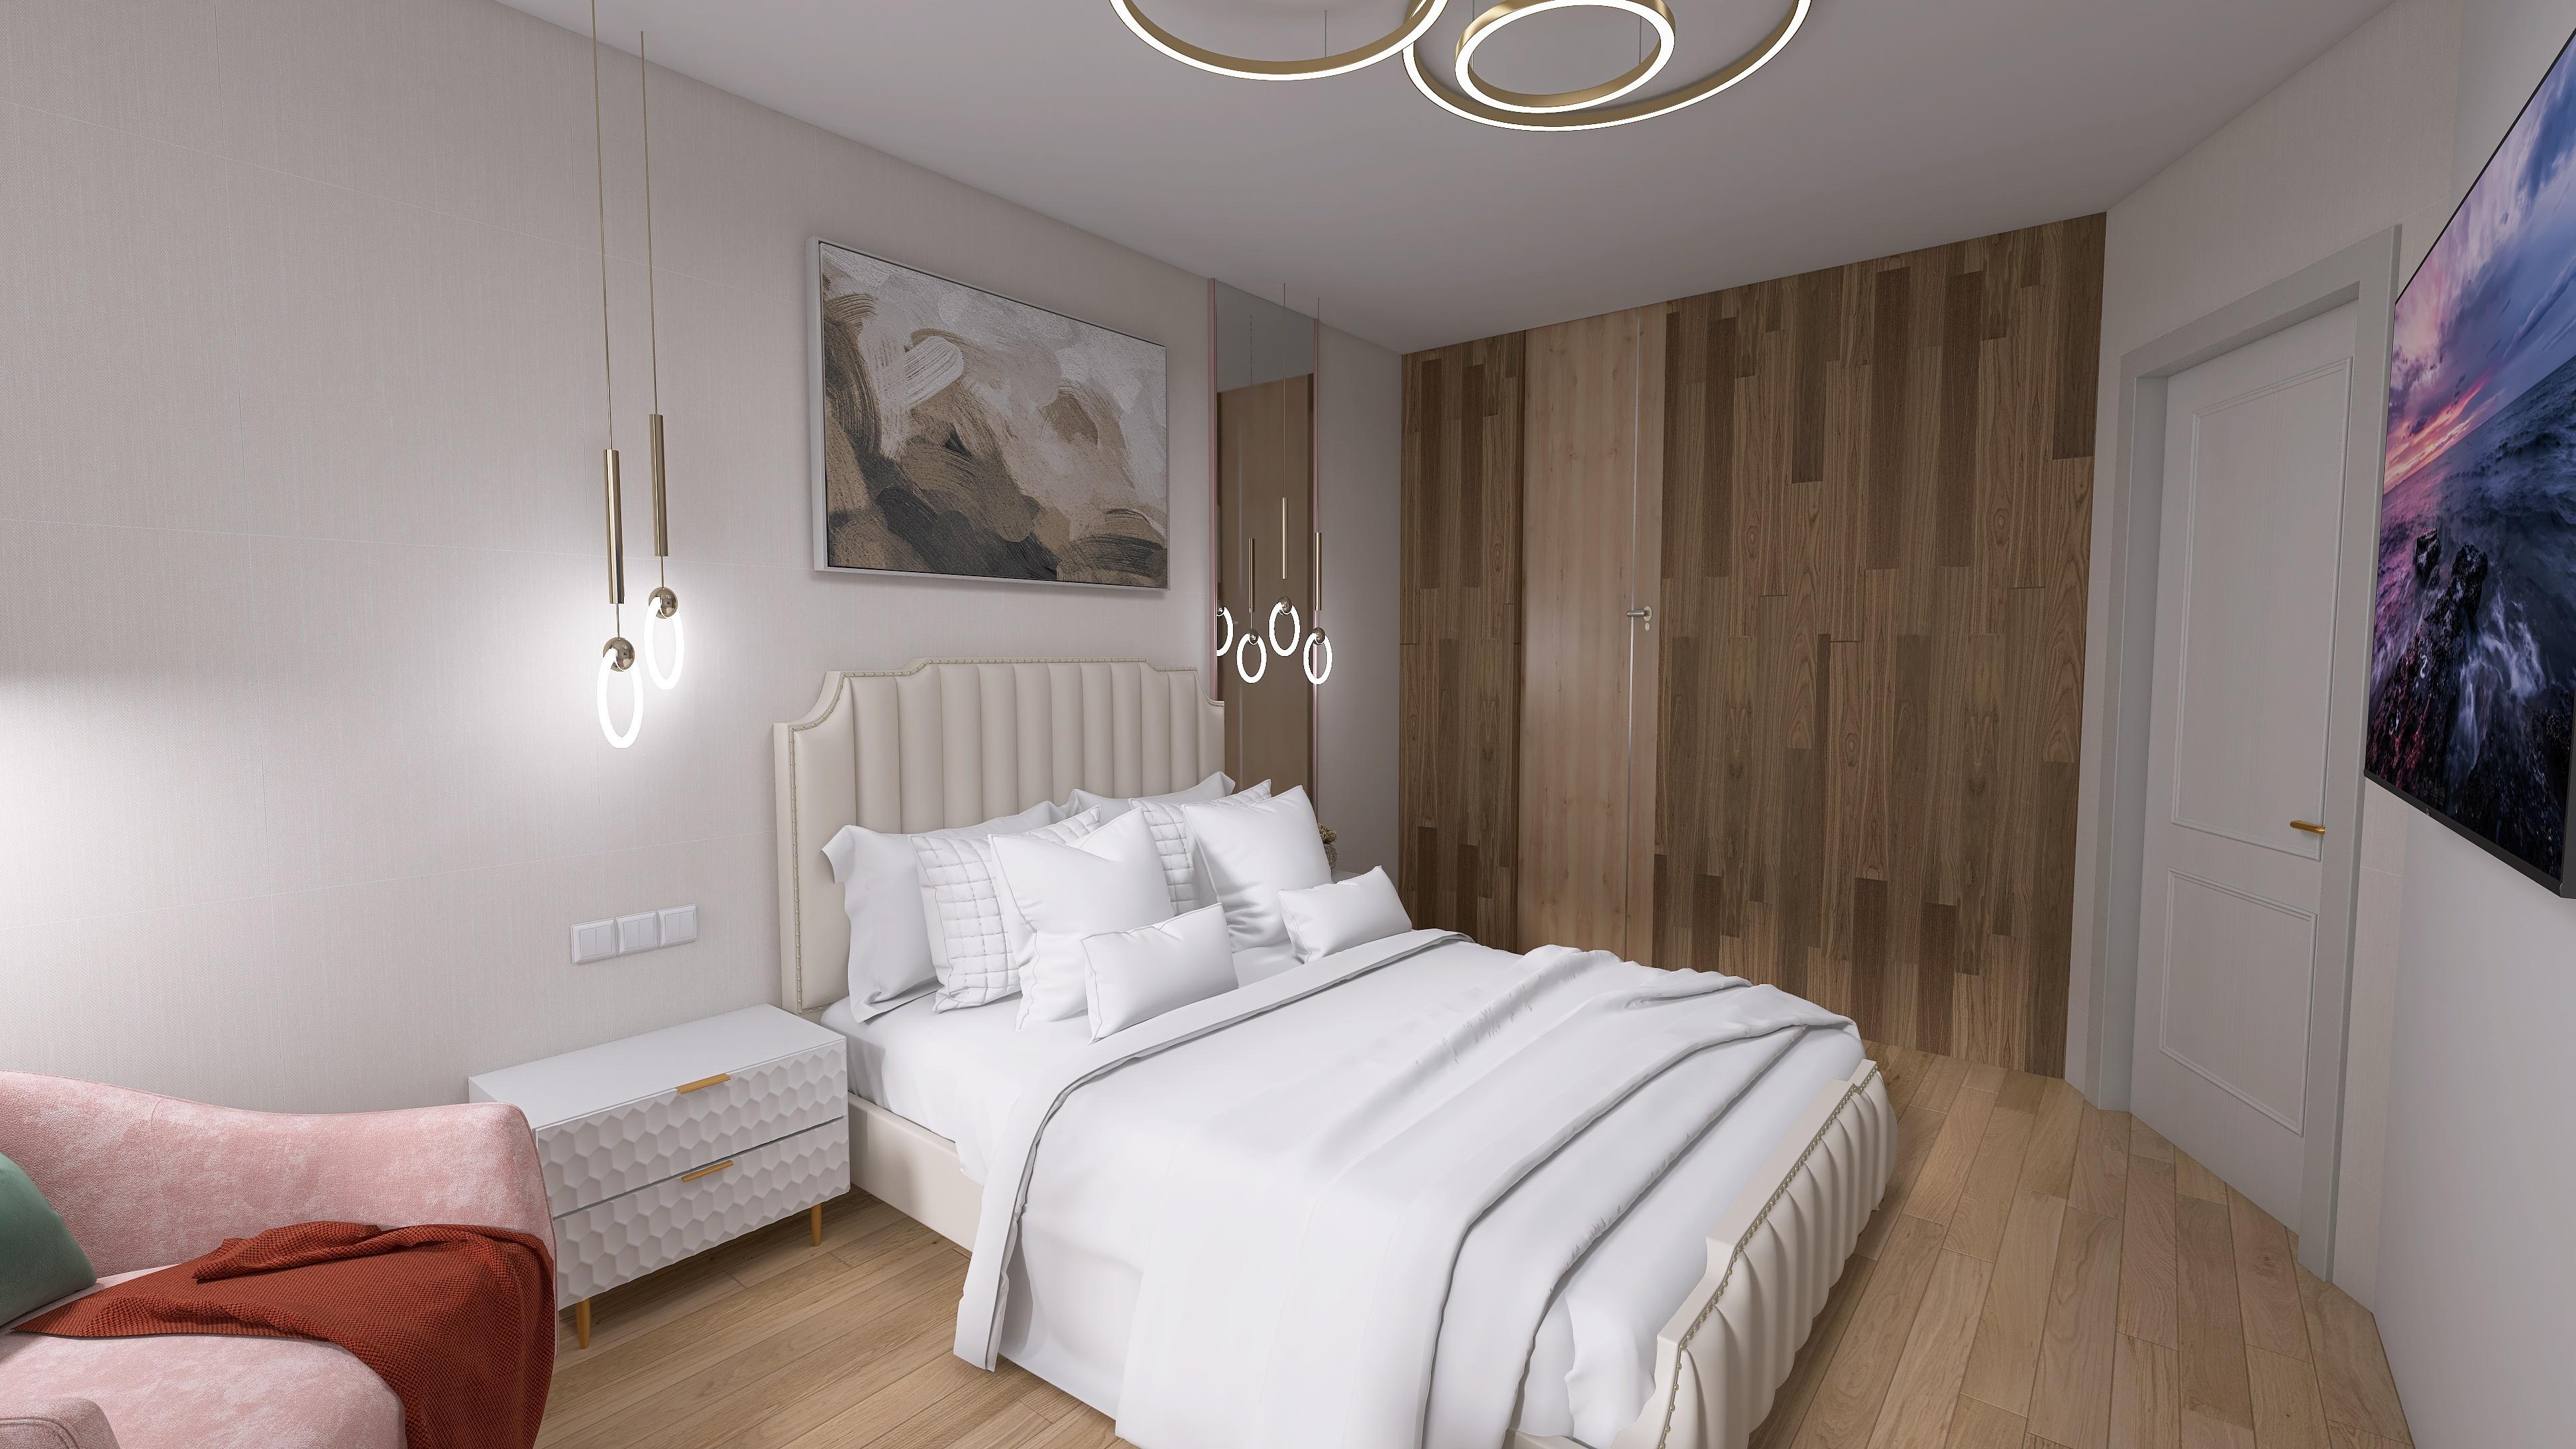 Интерьер спальни cветовыми линиями, подсветкой настенной, подсветкой светодиодной и светильниками над кроватью